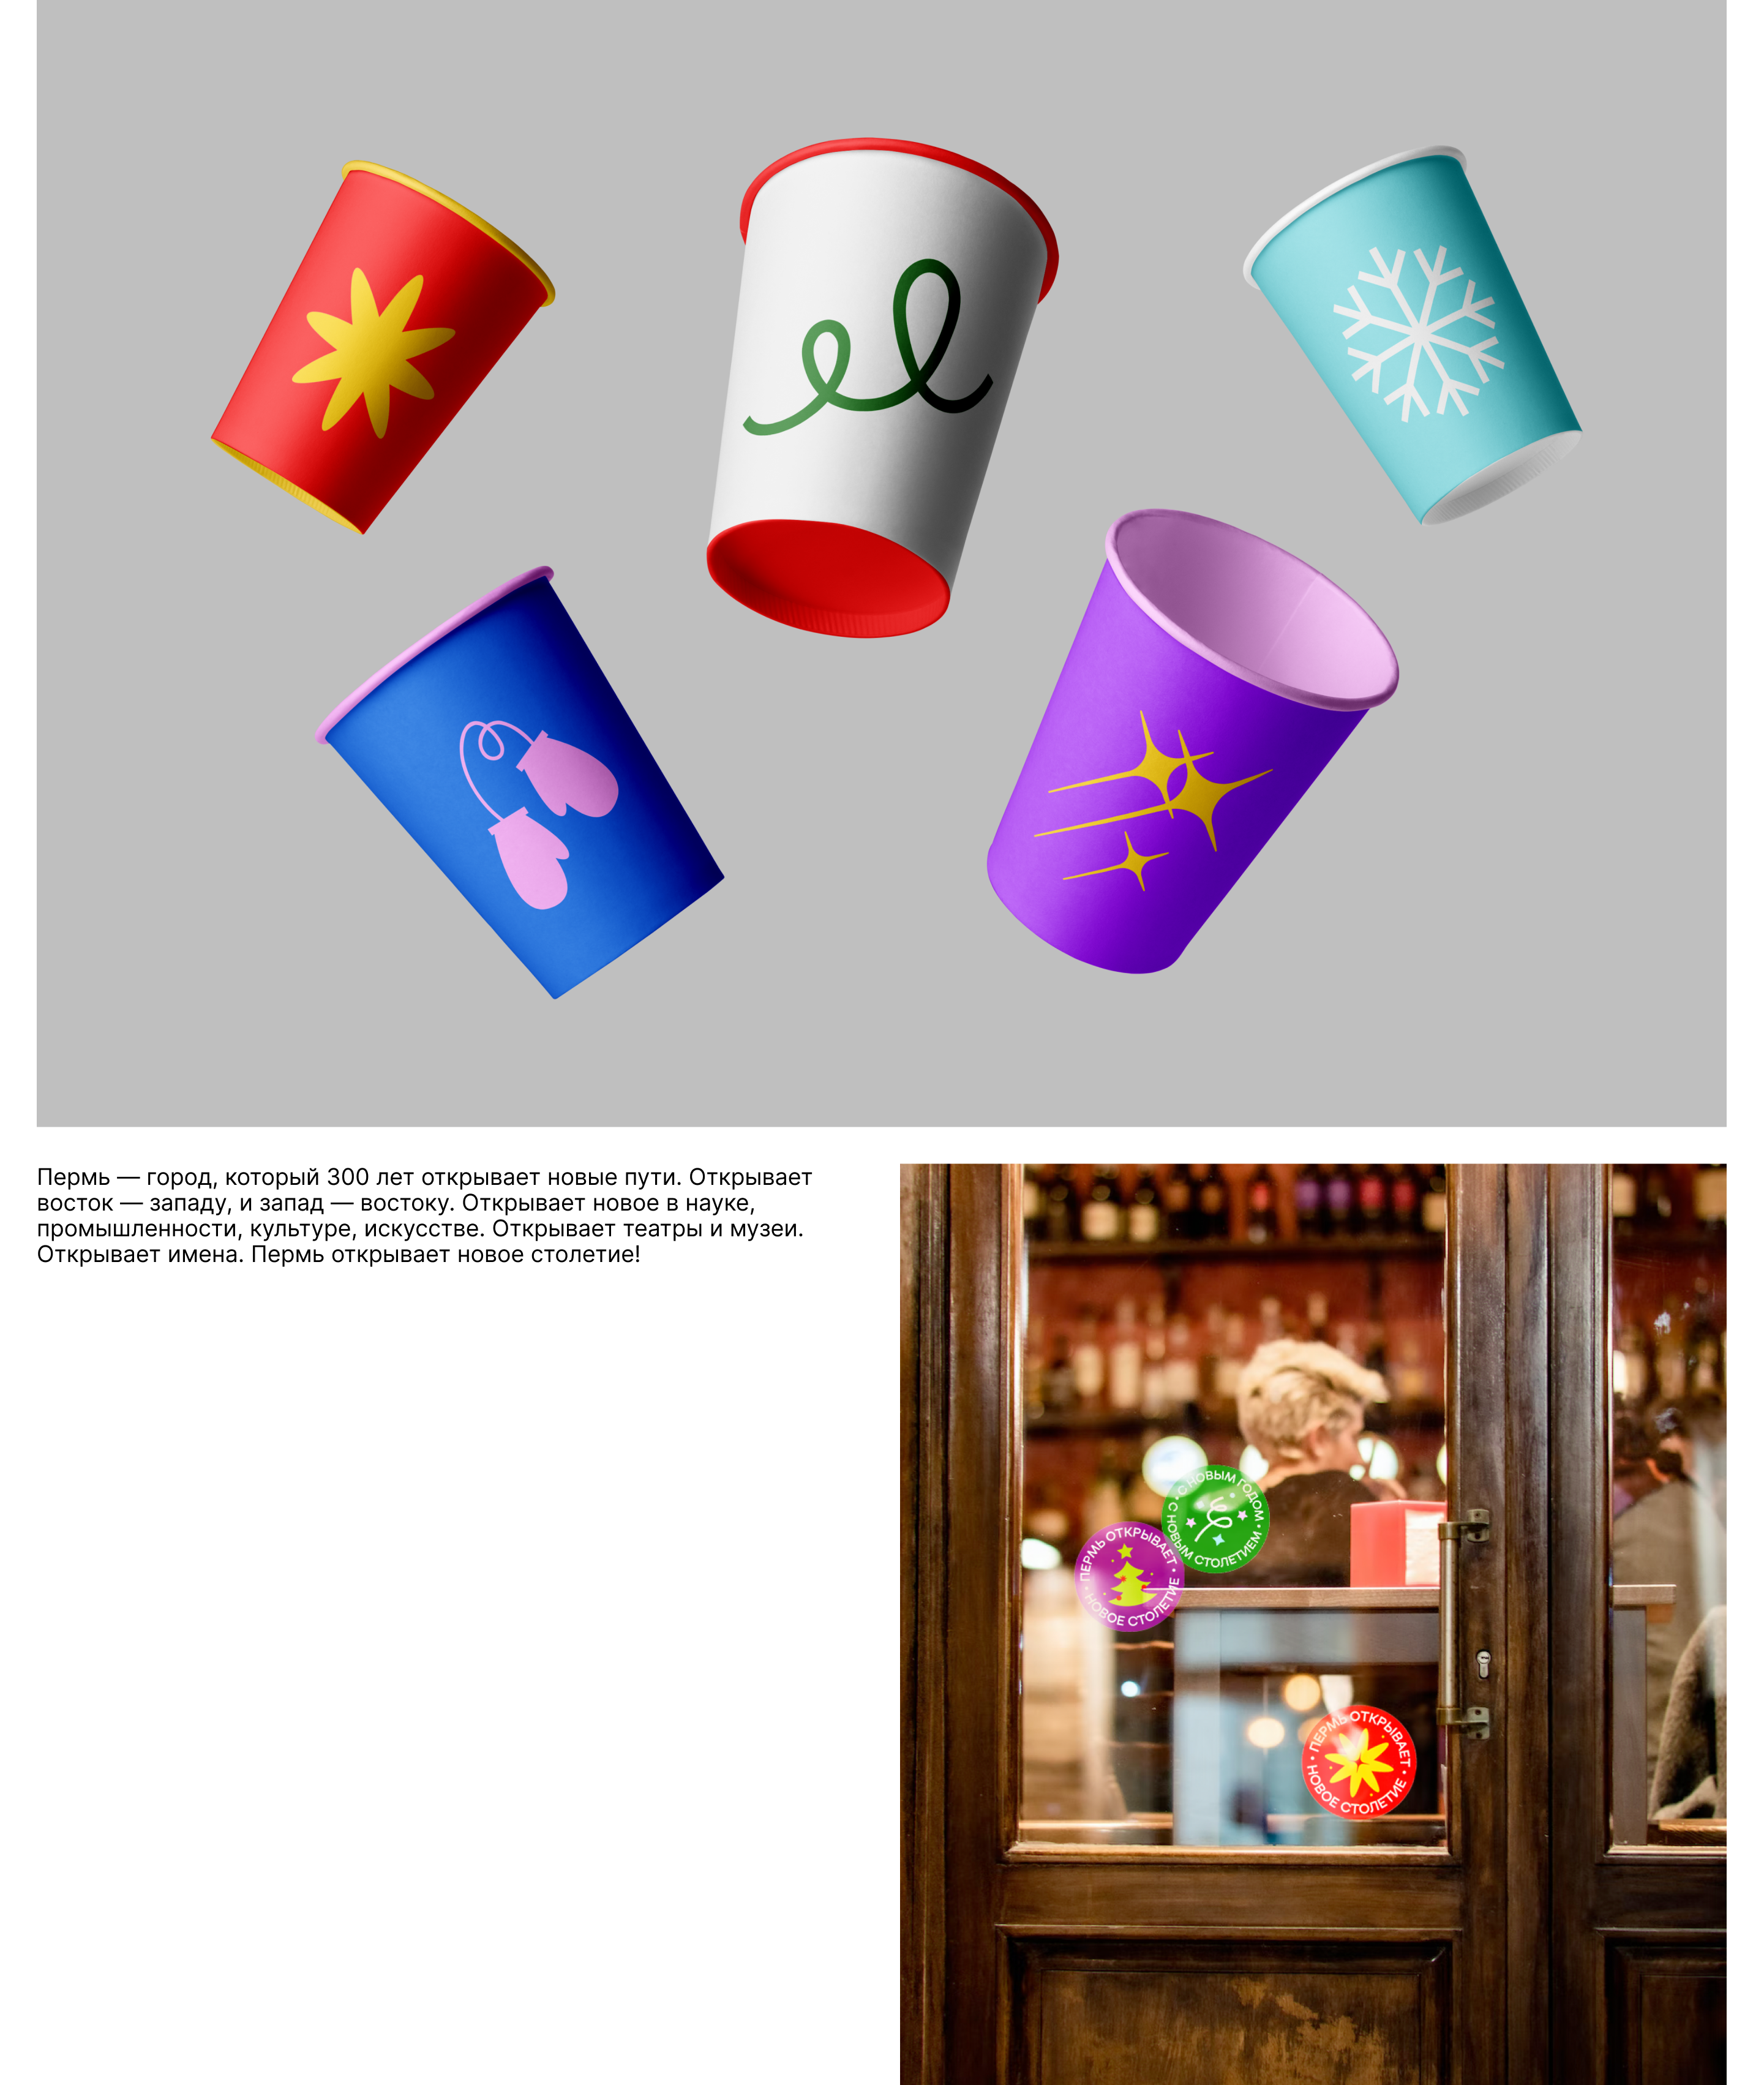 Новый год в Перми — Изображение №5 — Брендинг, Графика на Dprofile